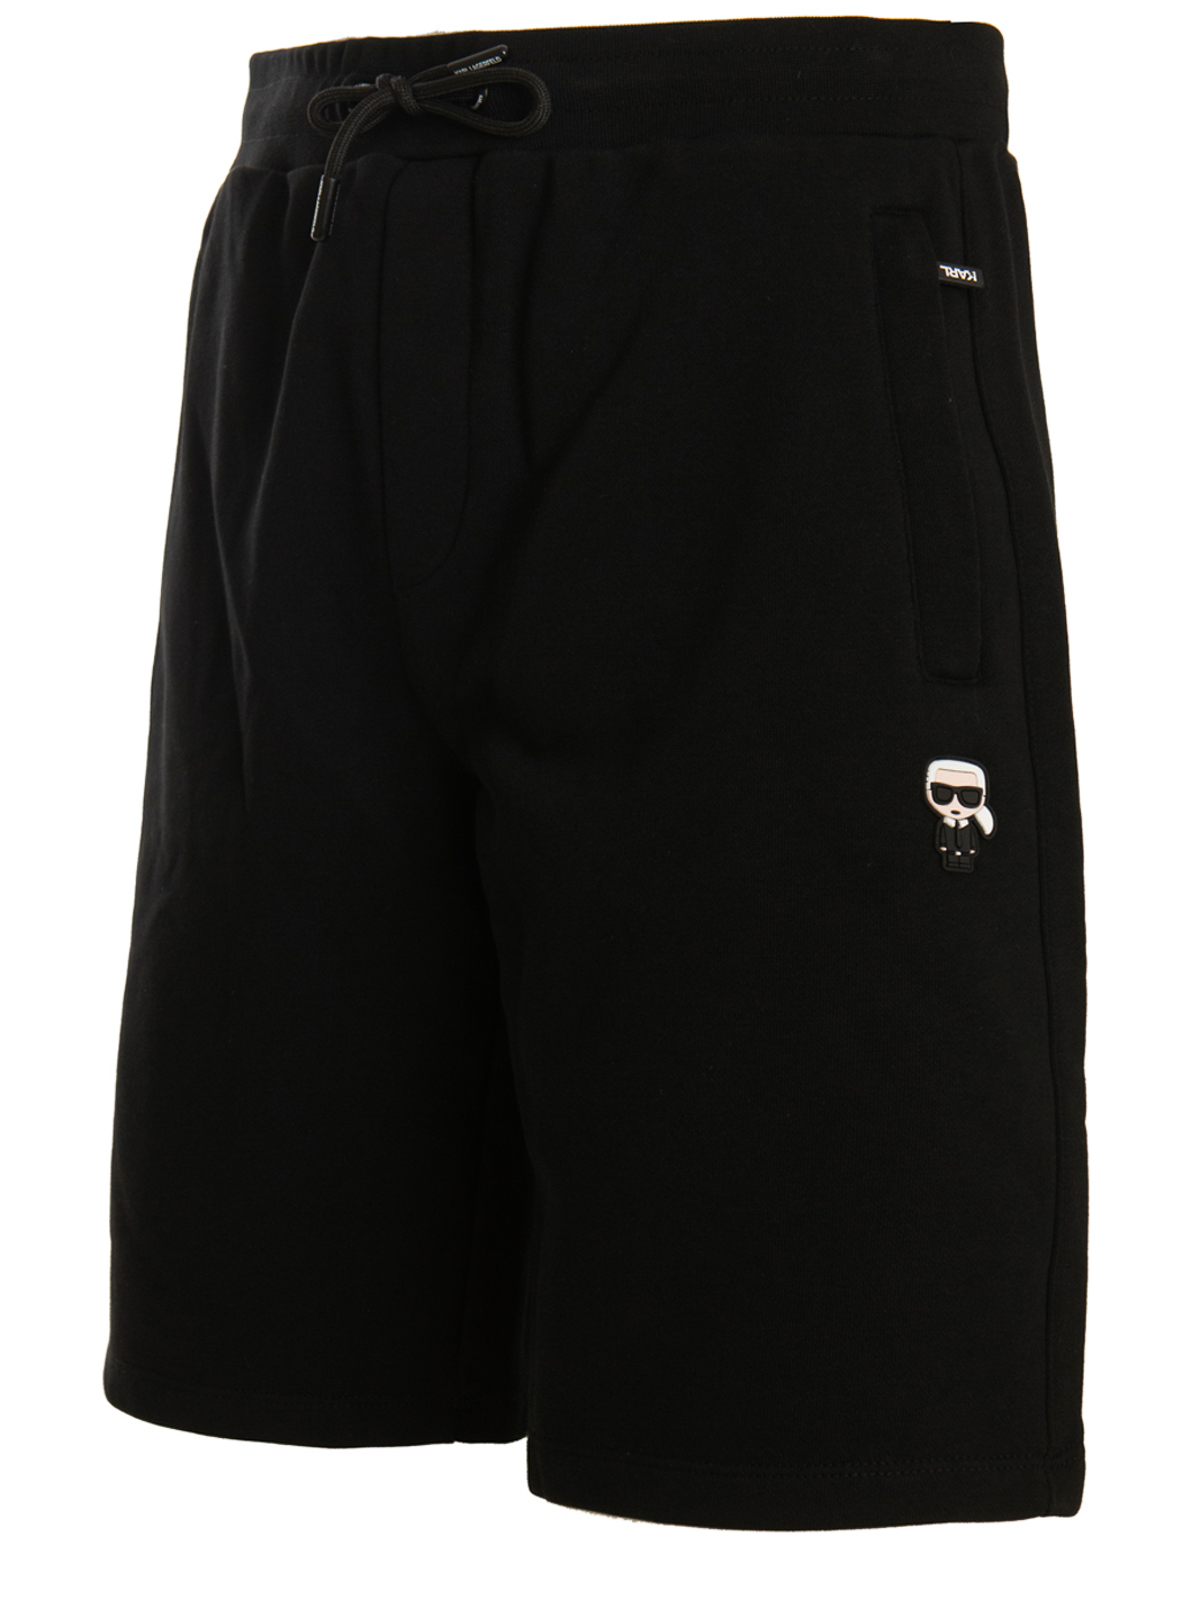 Trousers Shorts Karl Lagerfeld - Toki doki short - 705E14 | iKRIX.com